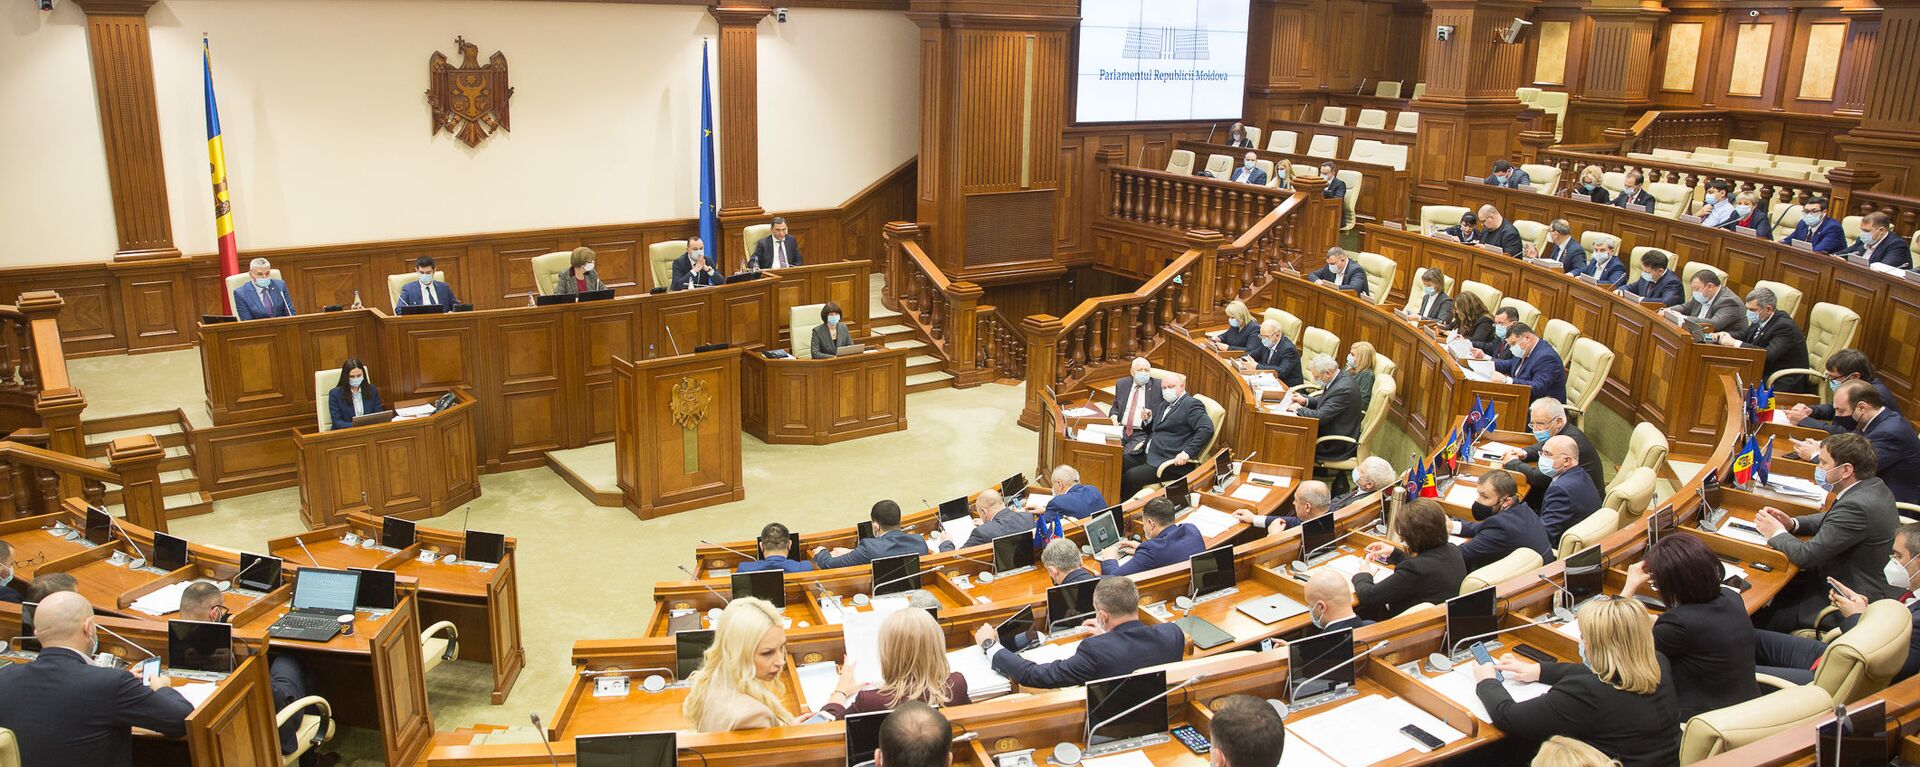 Ședința plenară a Parlamentului, 16 decembrie 2020 - Sputnik Moldova, 1920, 12.02.2021